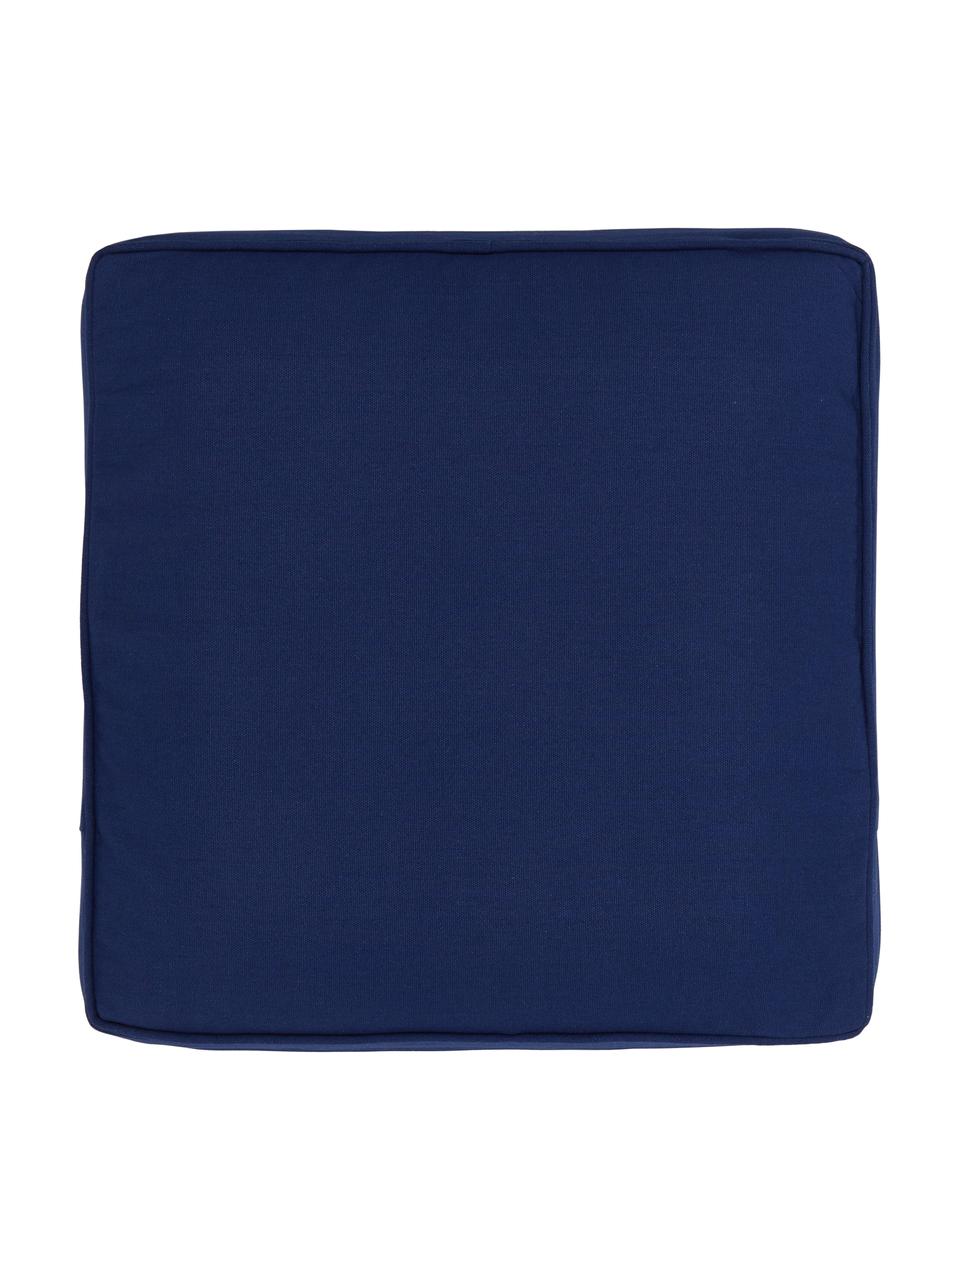 Coussin de chaise épais bleu foncé Zoey, Bleu foncé, larg. 40 x long. 40 cm